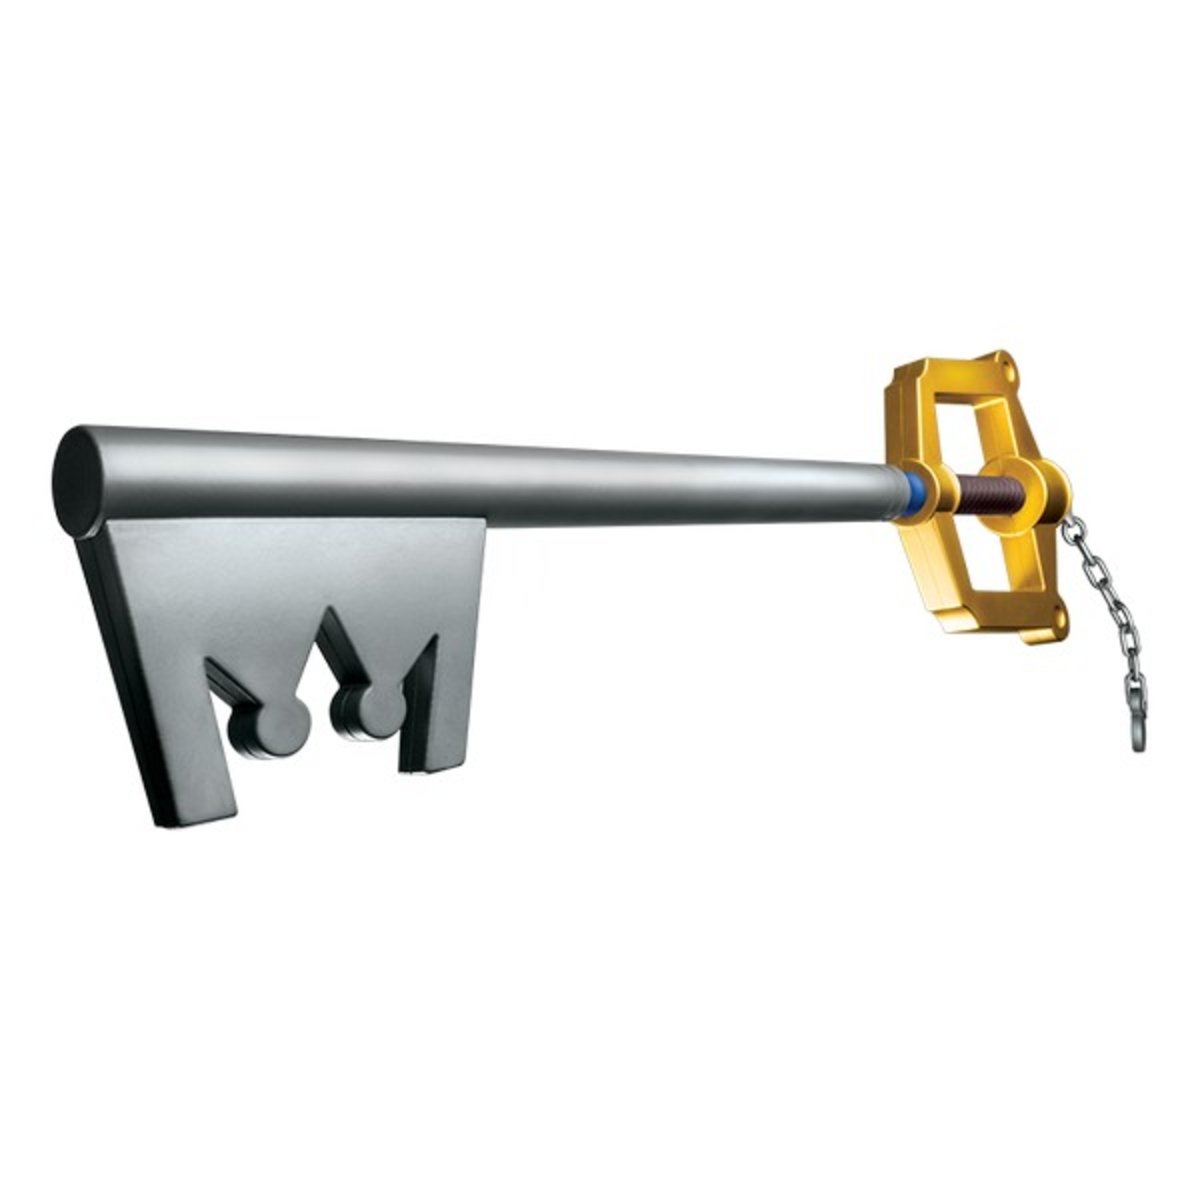 La llave espada a escala real de Kingdom Hearts que todo fan desea tener